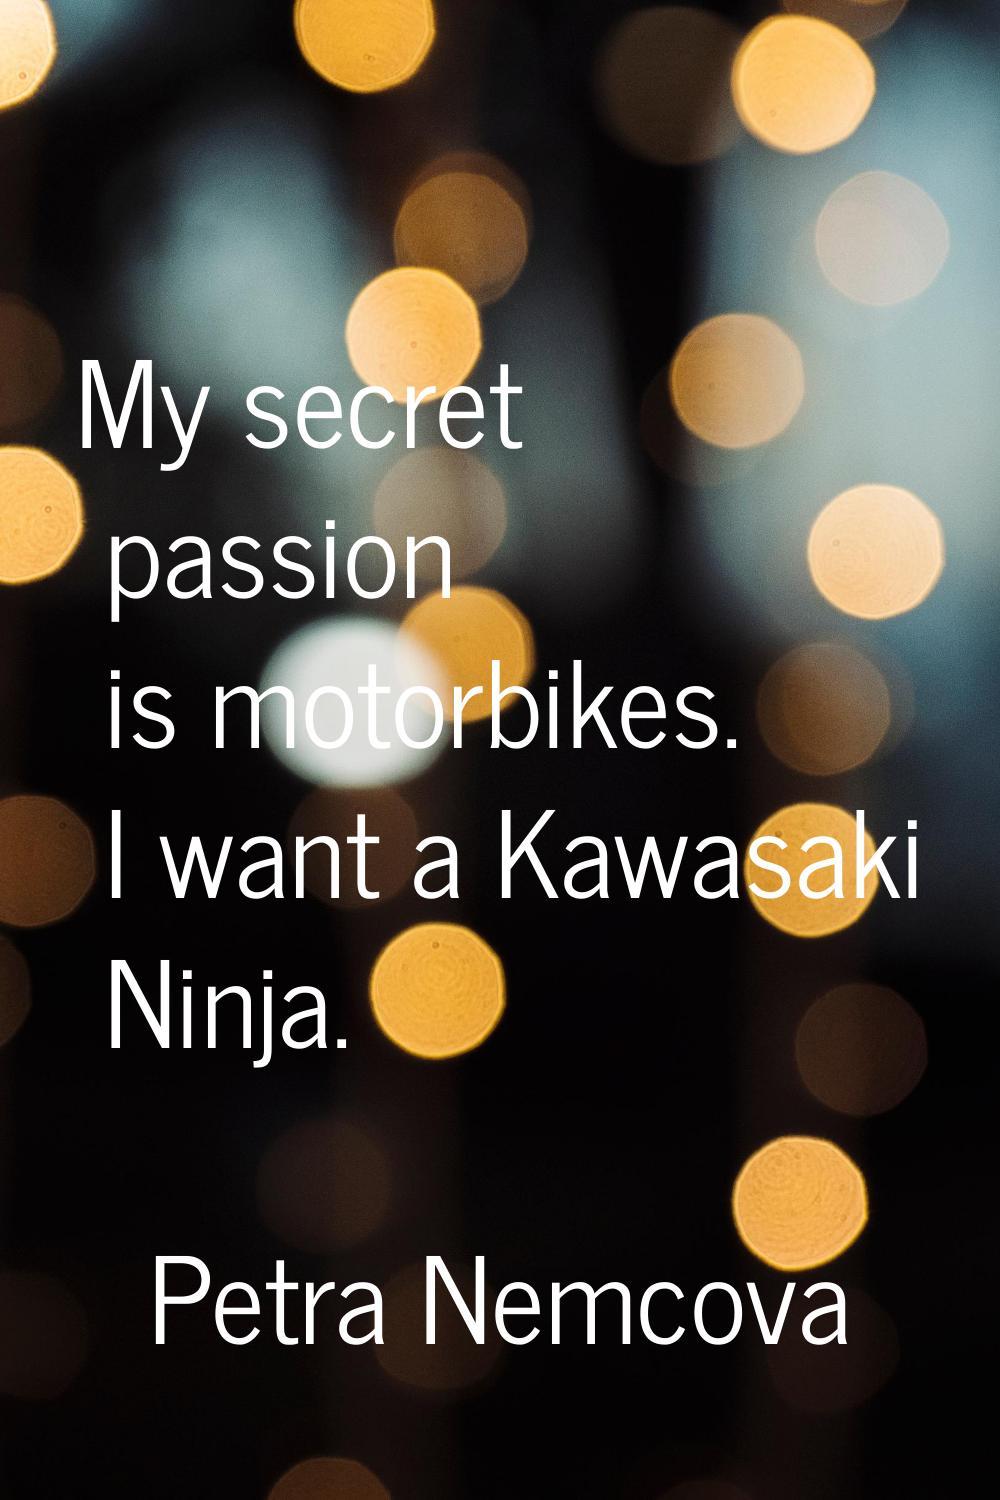 My secret passion is motorbikes. I want a Kawasaki Ninja.